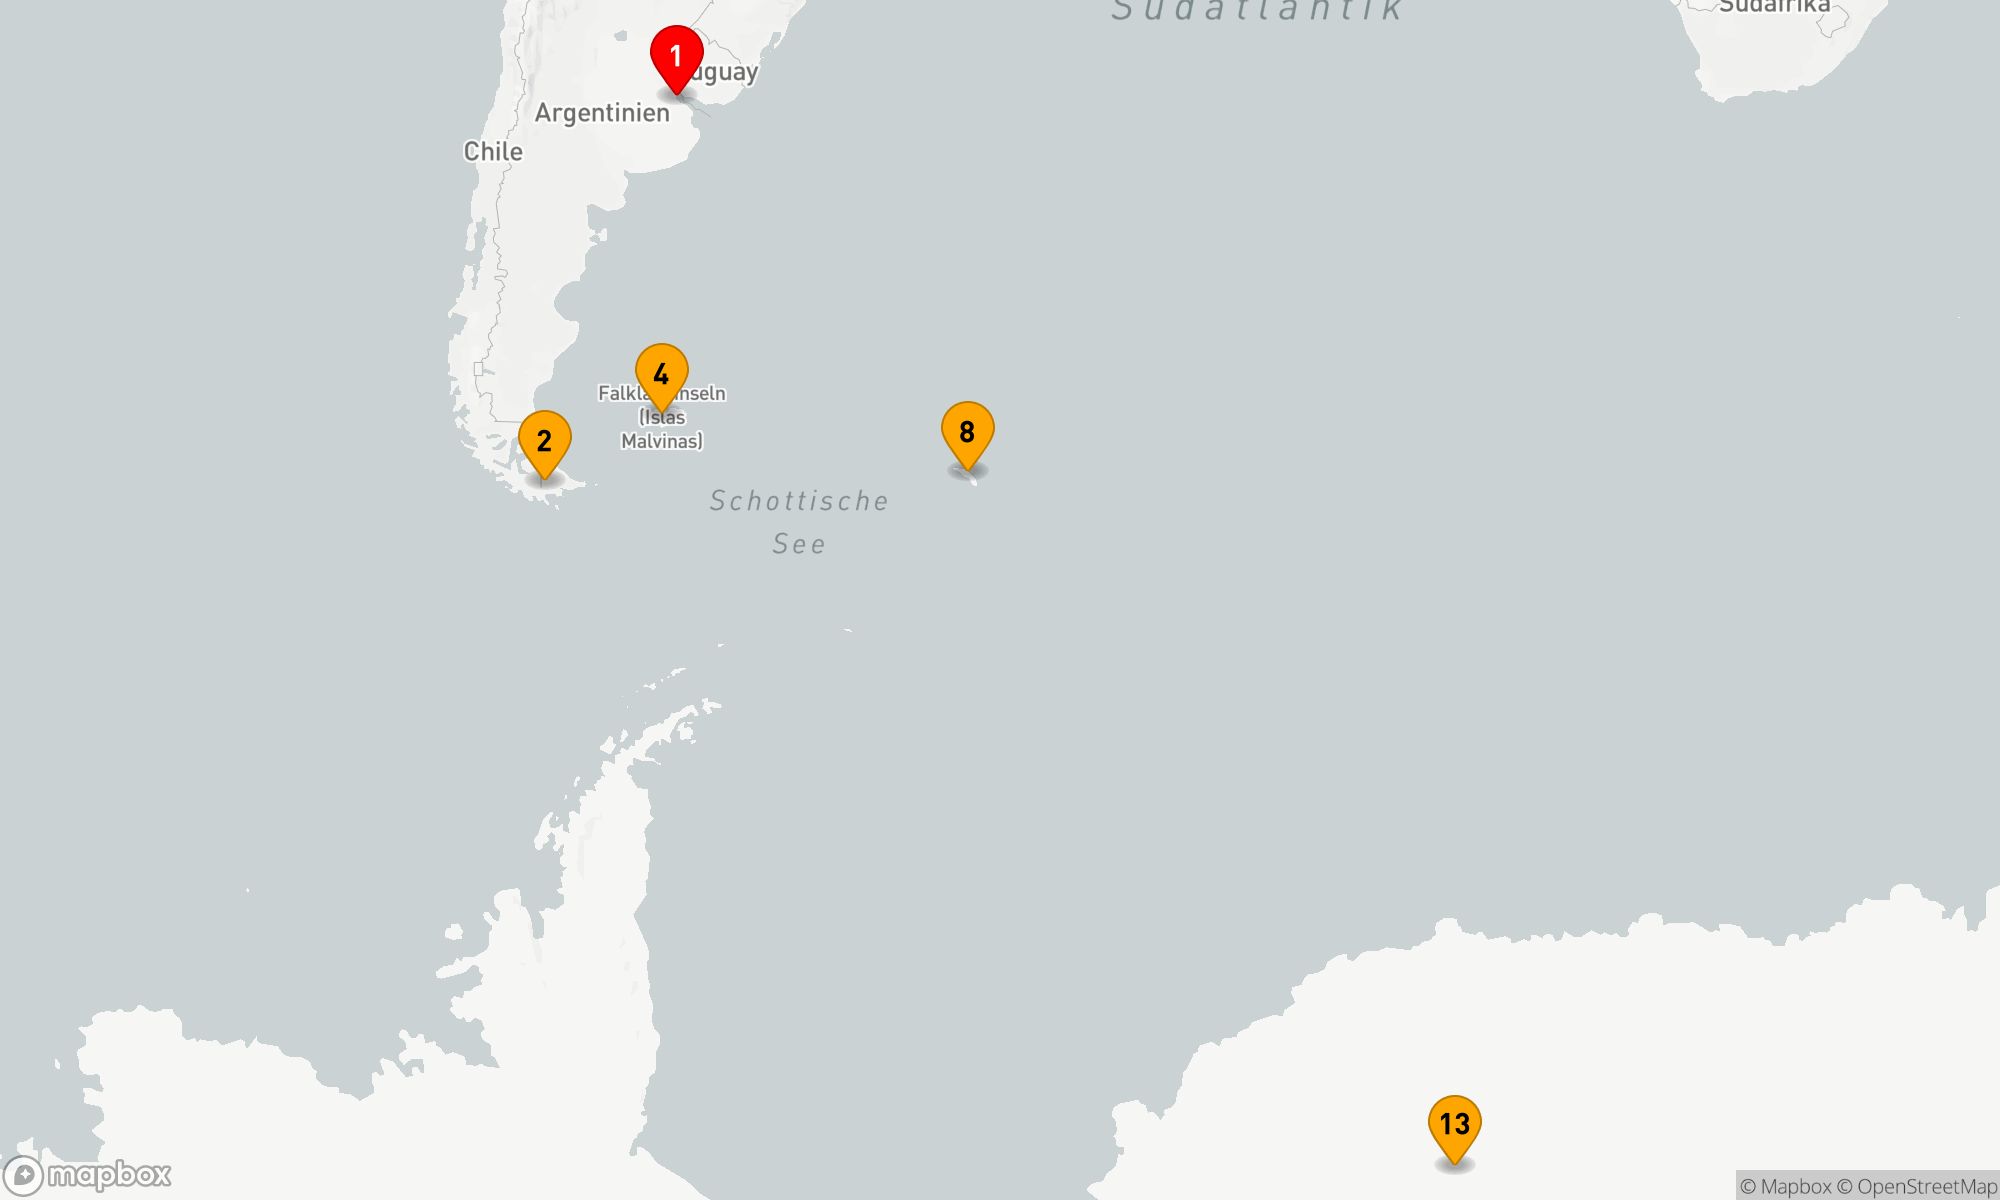 Antarctica, South Georgia & Falkland Islands